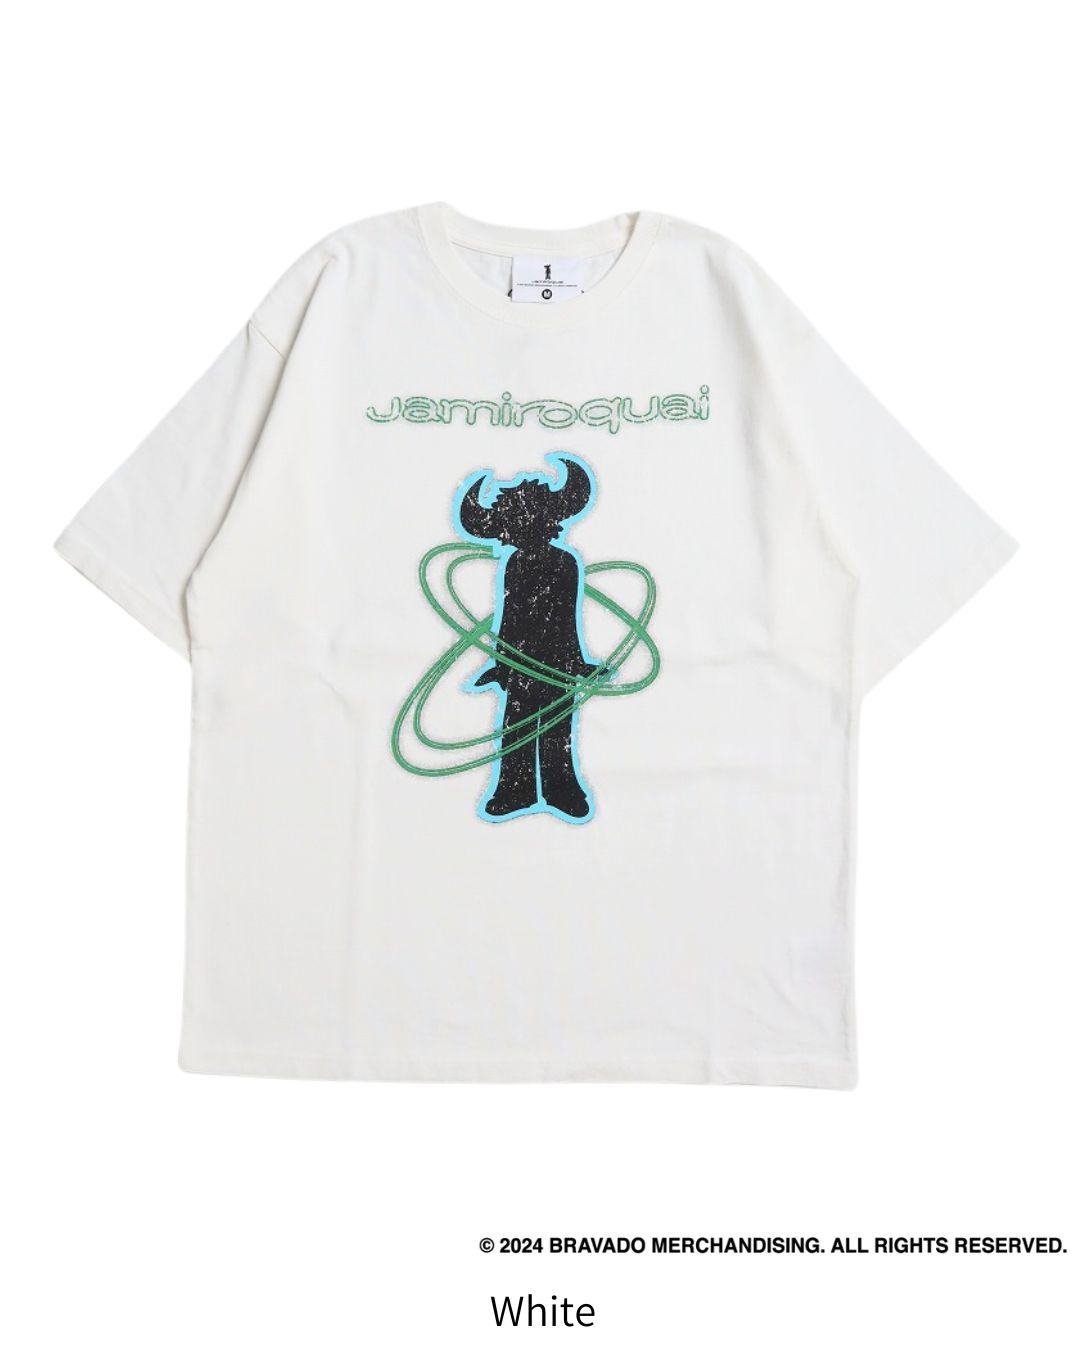 【Jamiroquai】ロゴTシャツ